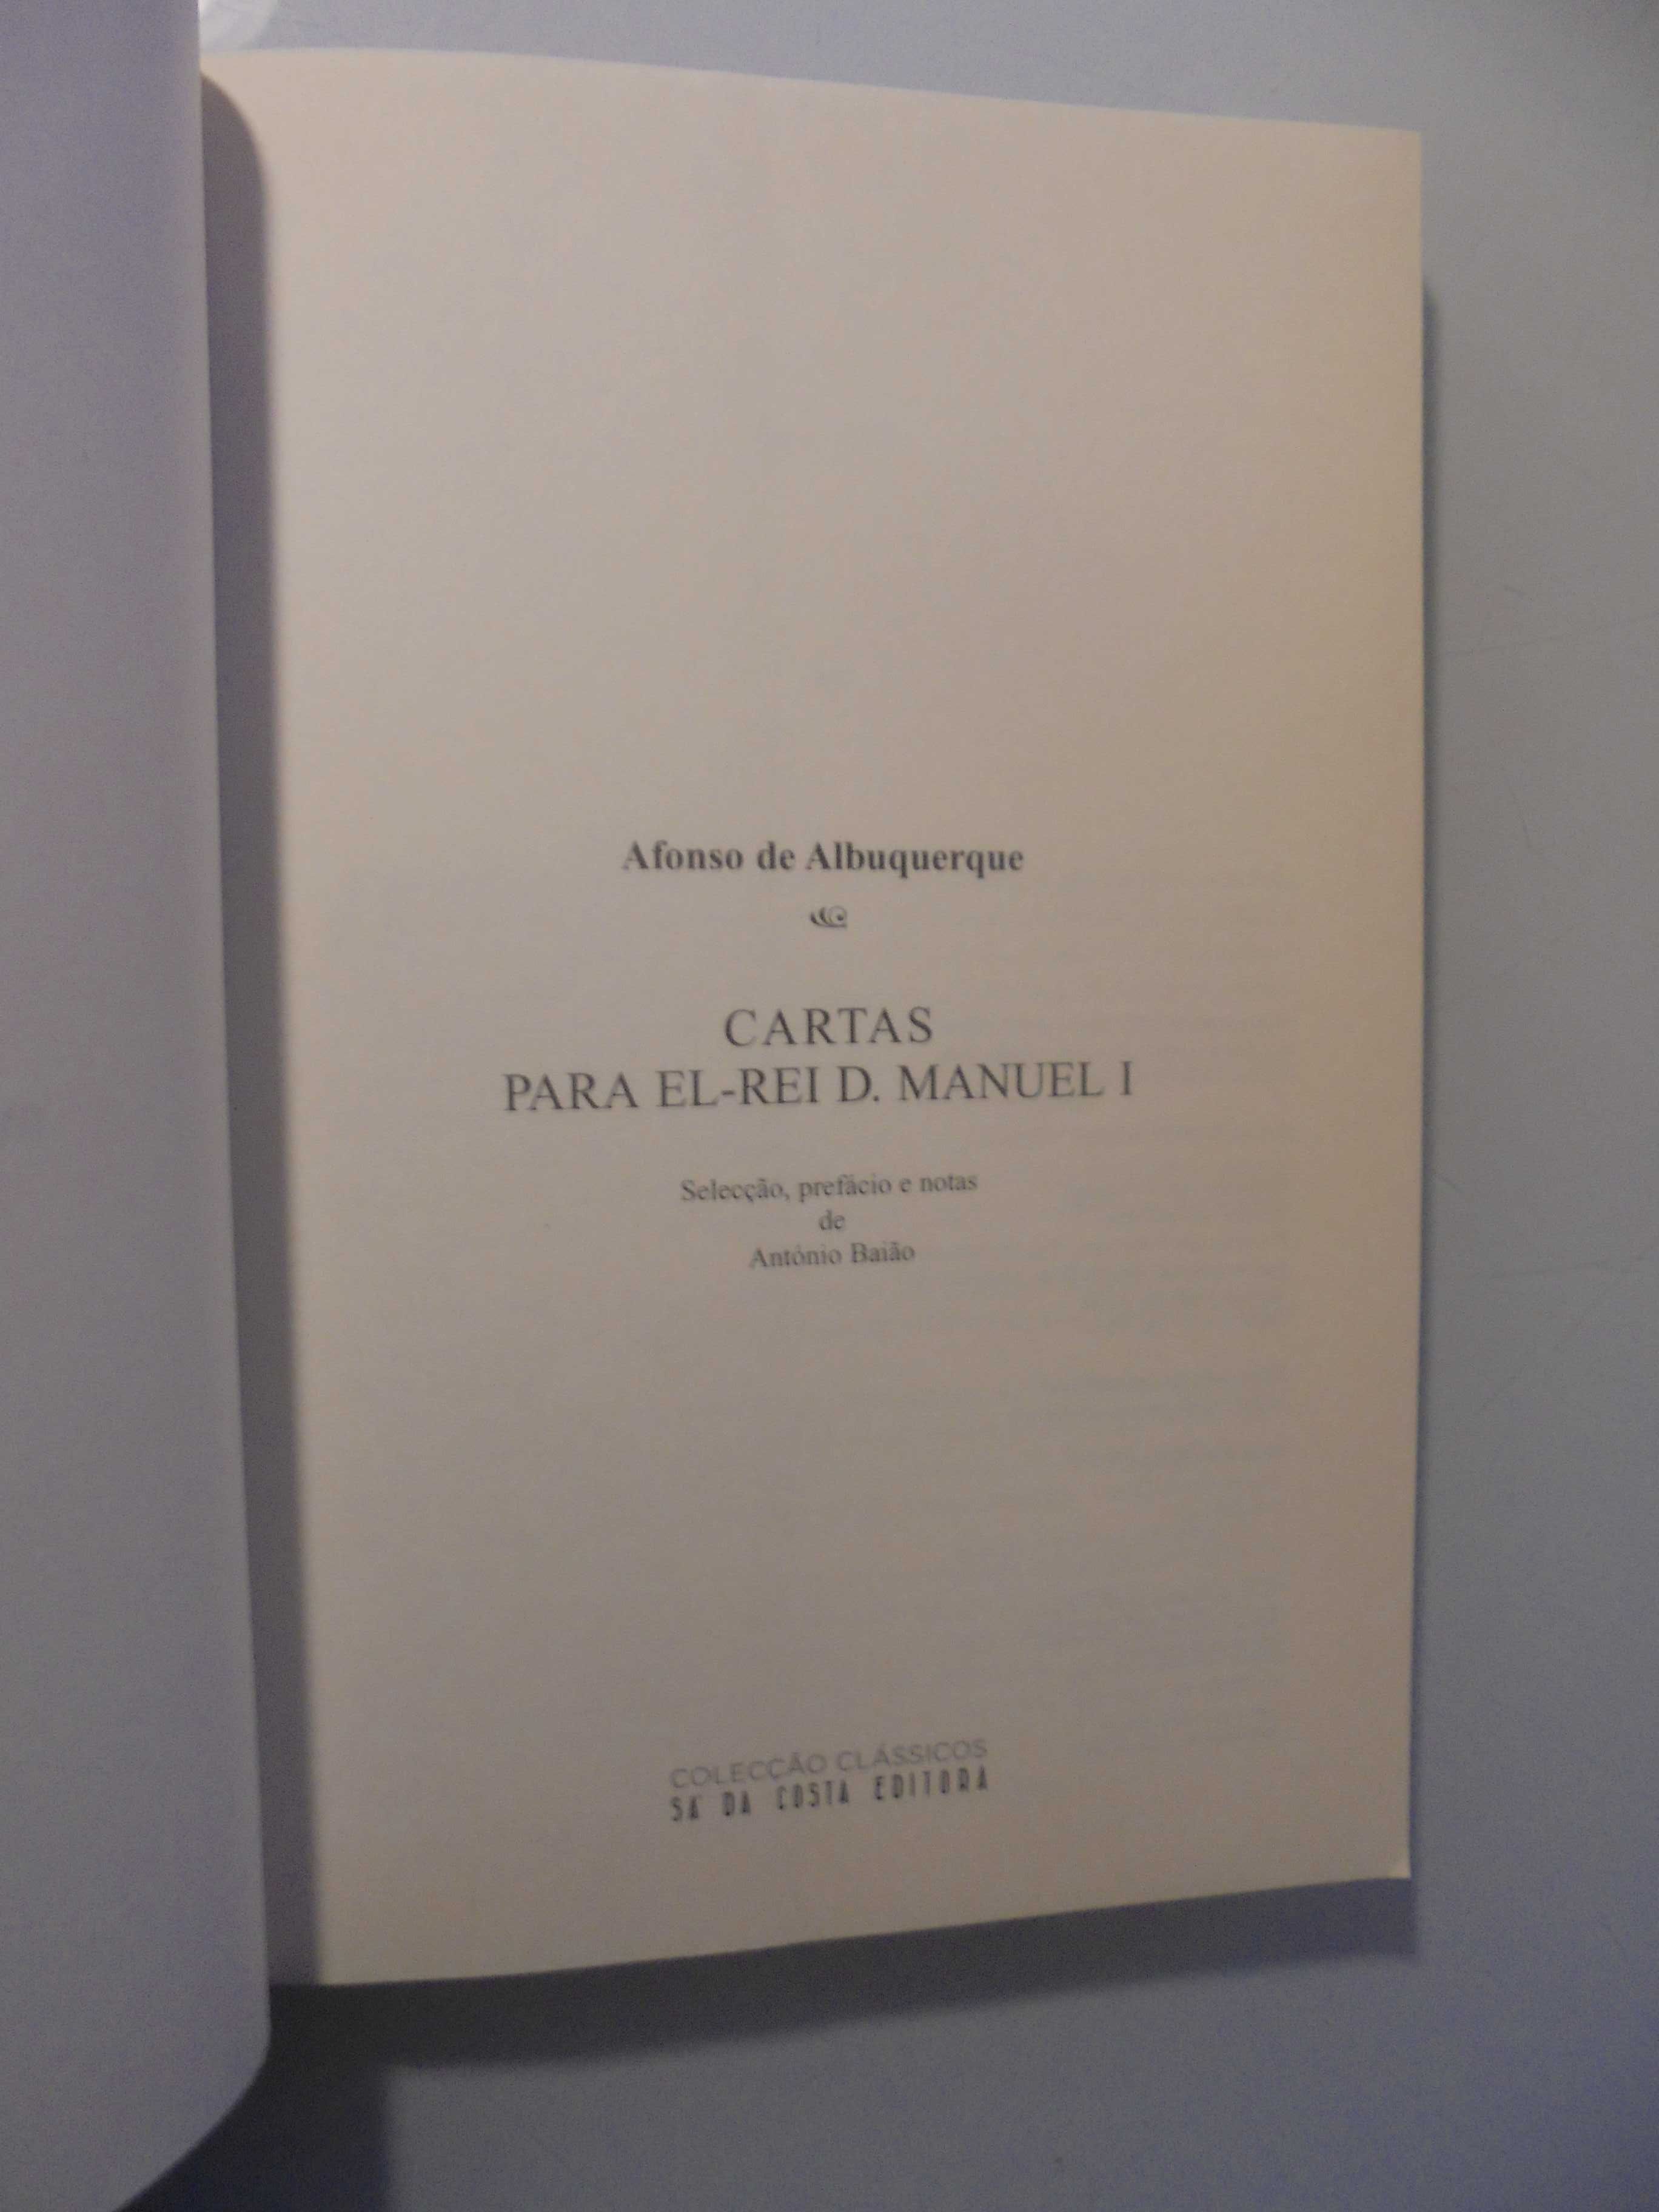 Baião (António);Afonso de Albuquerque-cartas Para El-Rei D.Manuel I